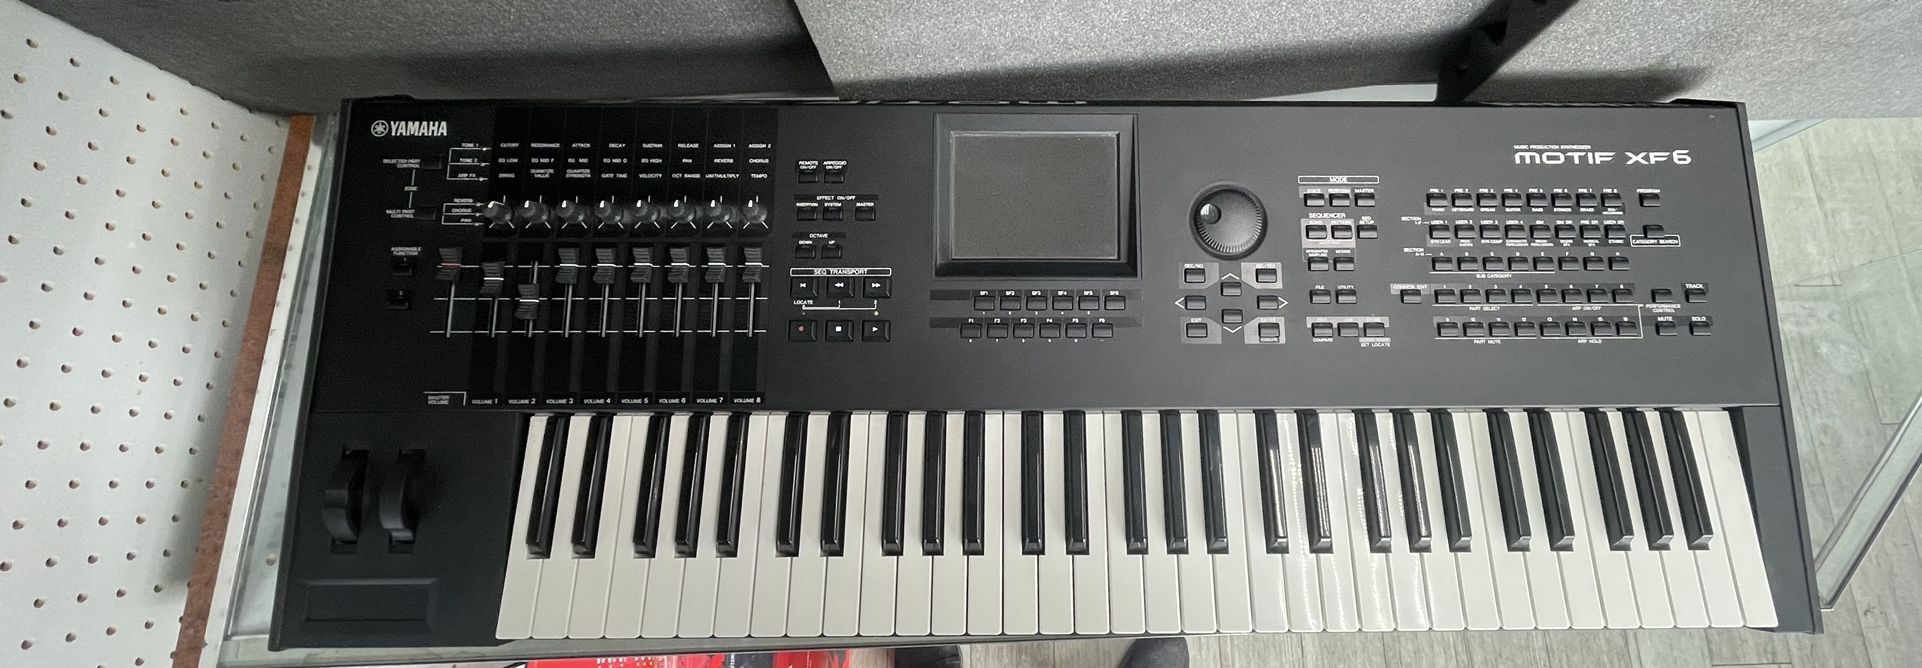 Yamaha Motif XF6 Keyboard 